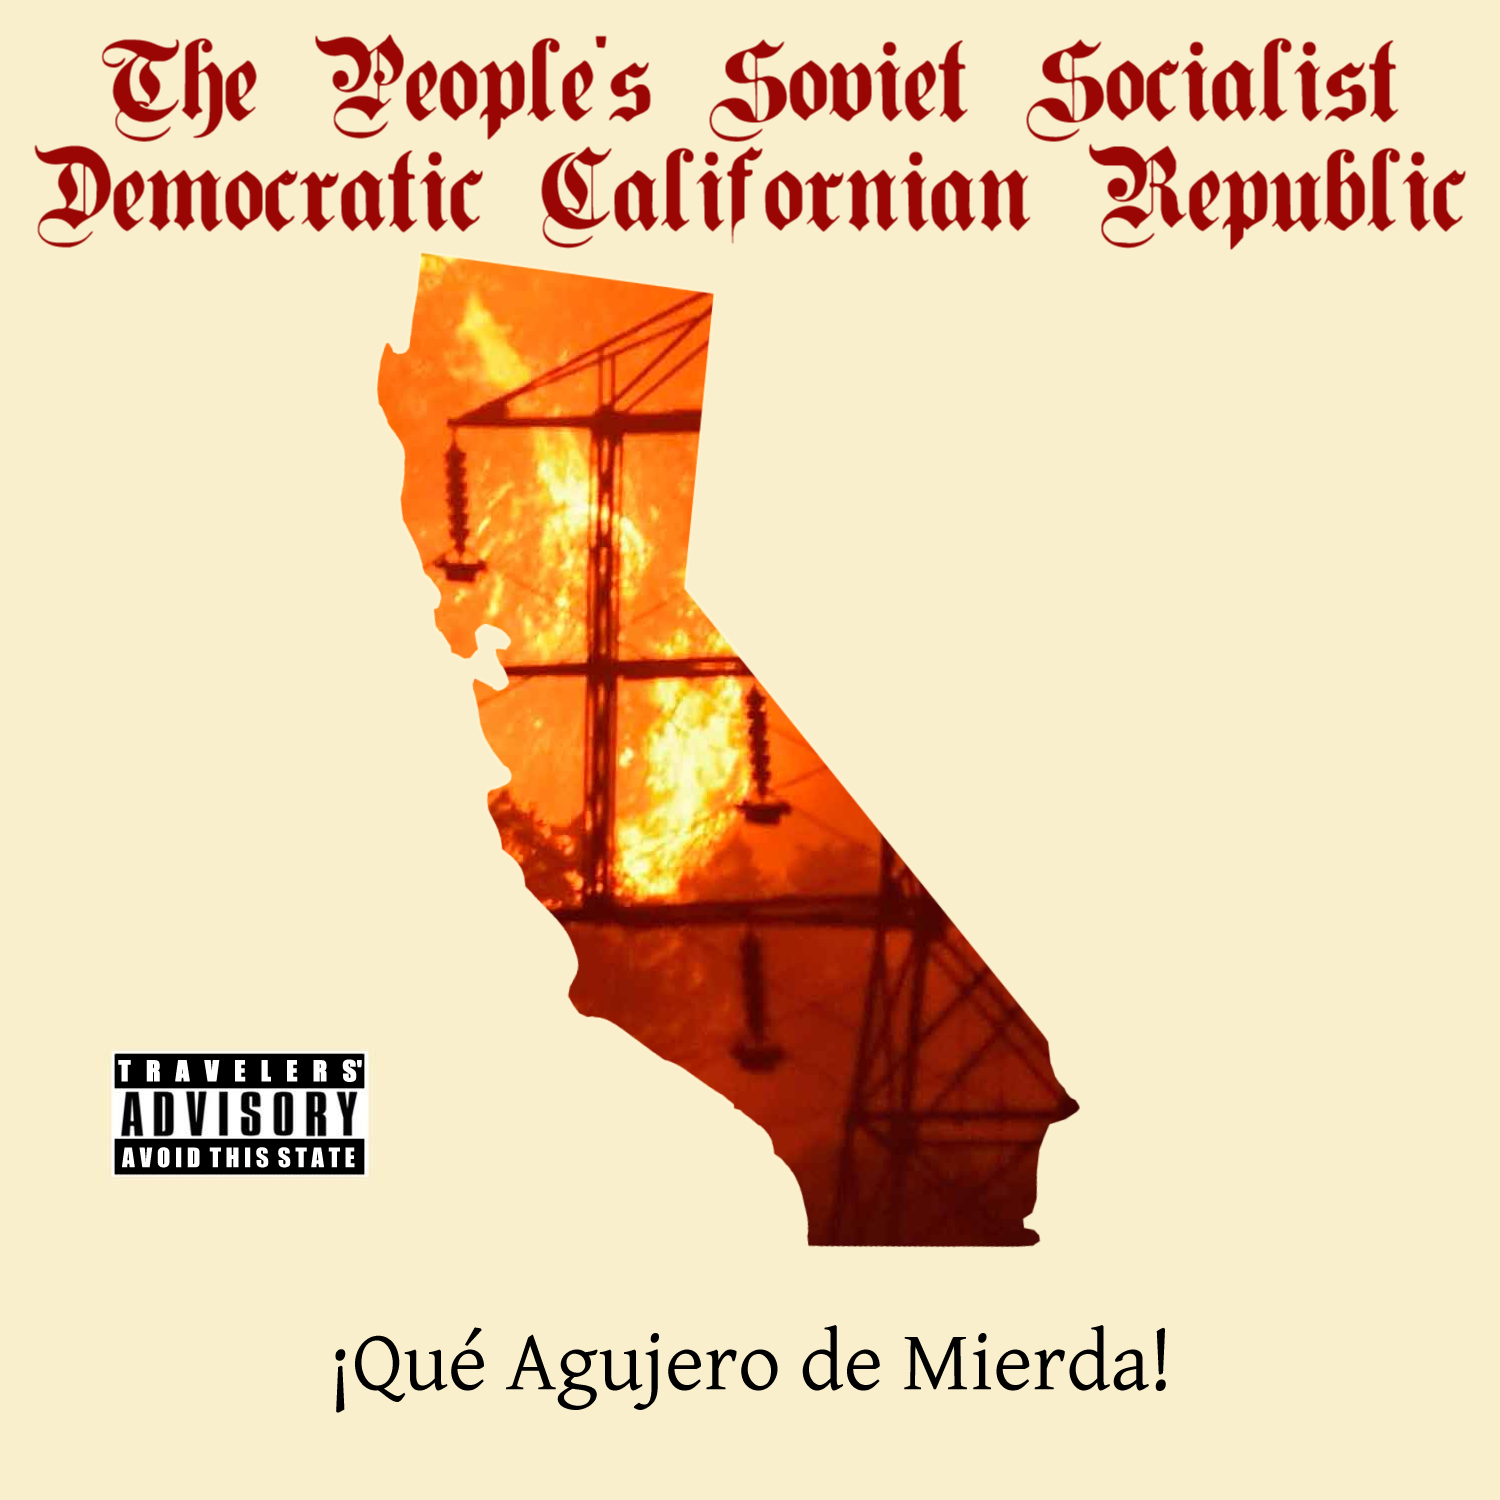 Album cover parody of California Republic by Mentes Diferentes